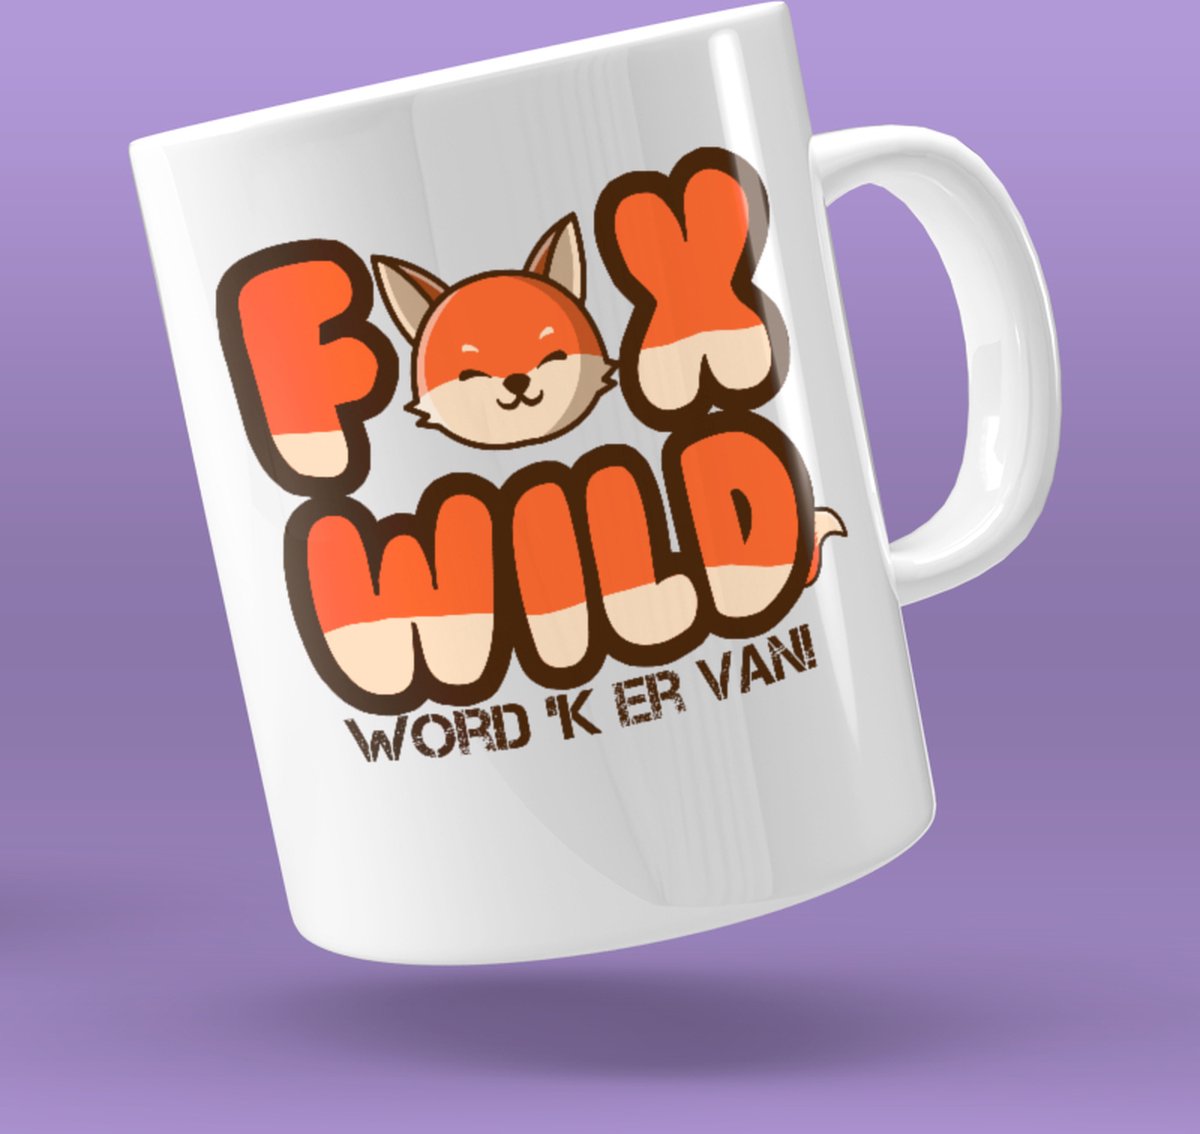 Mok Foxwild word 'k er van! full-color